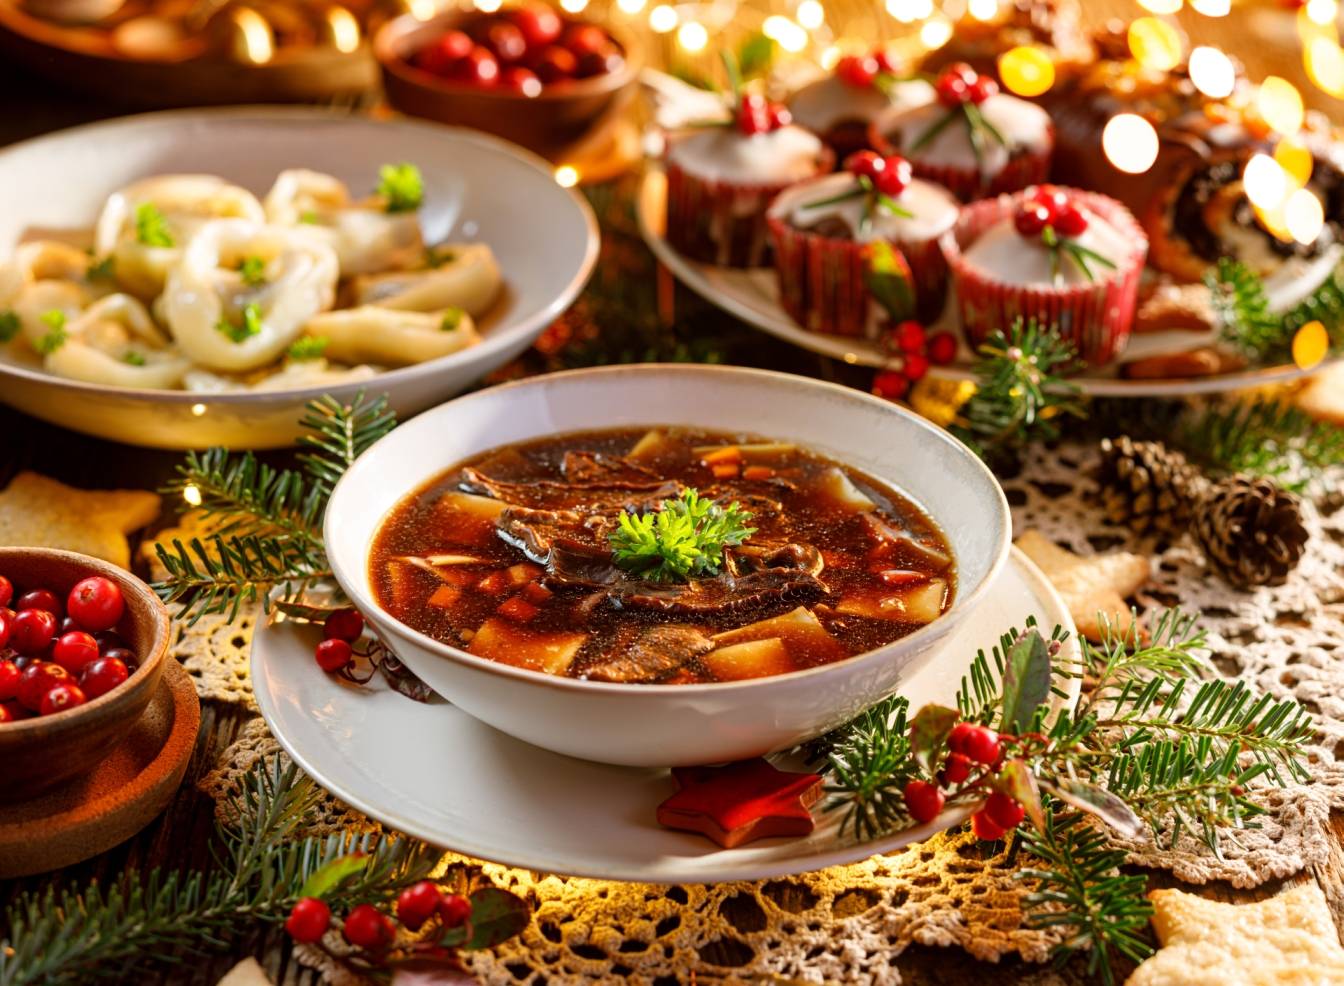 Potrawy wigilijne w Polsce - stół wigilijny zastawiony świątecznymi daniami, w tym zupą grzybową.